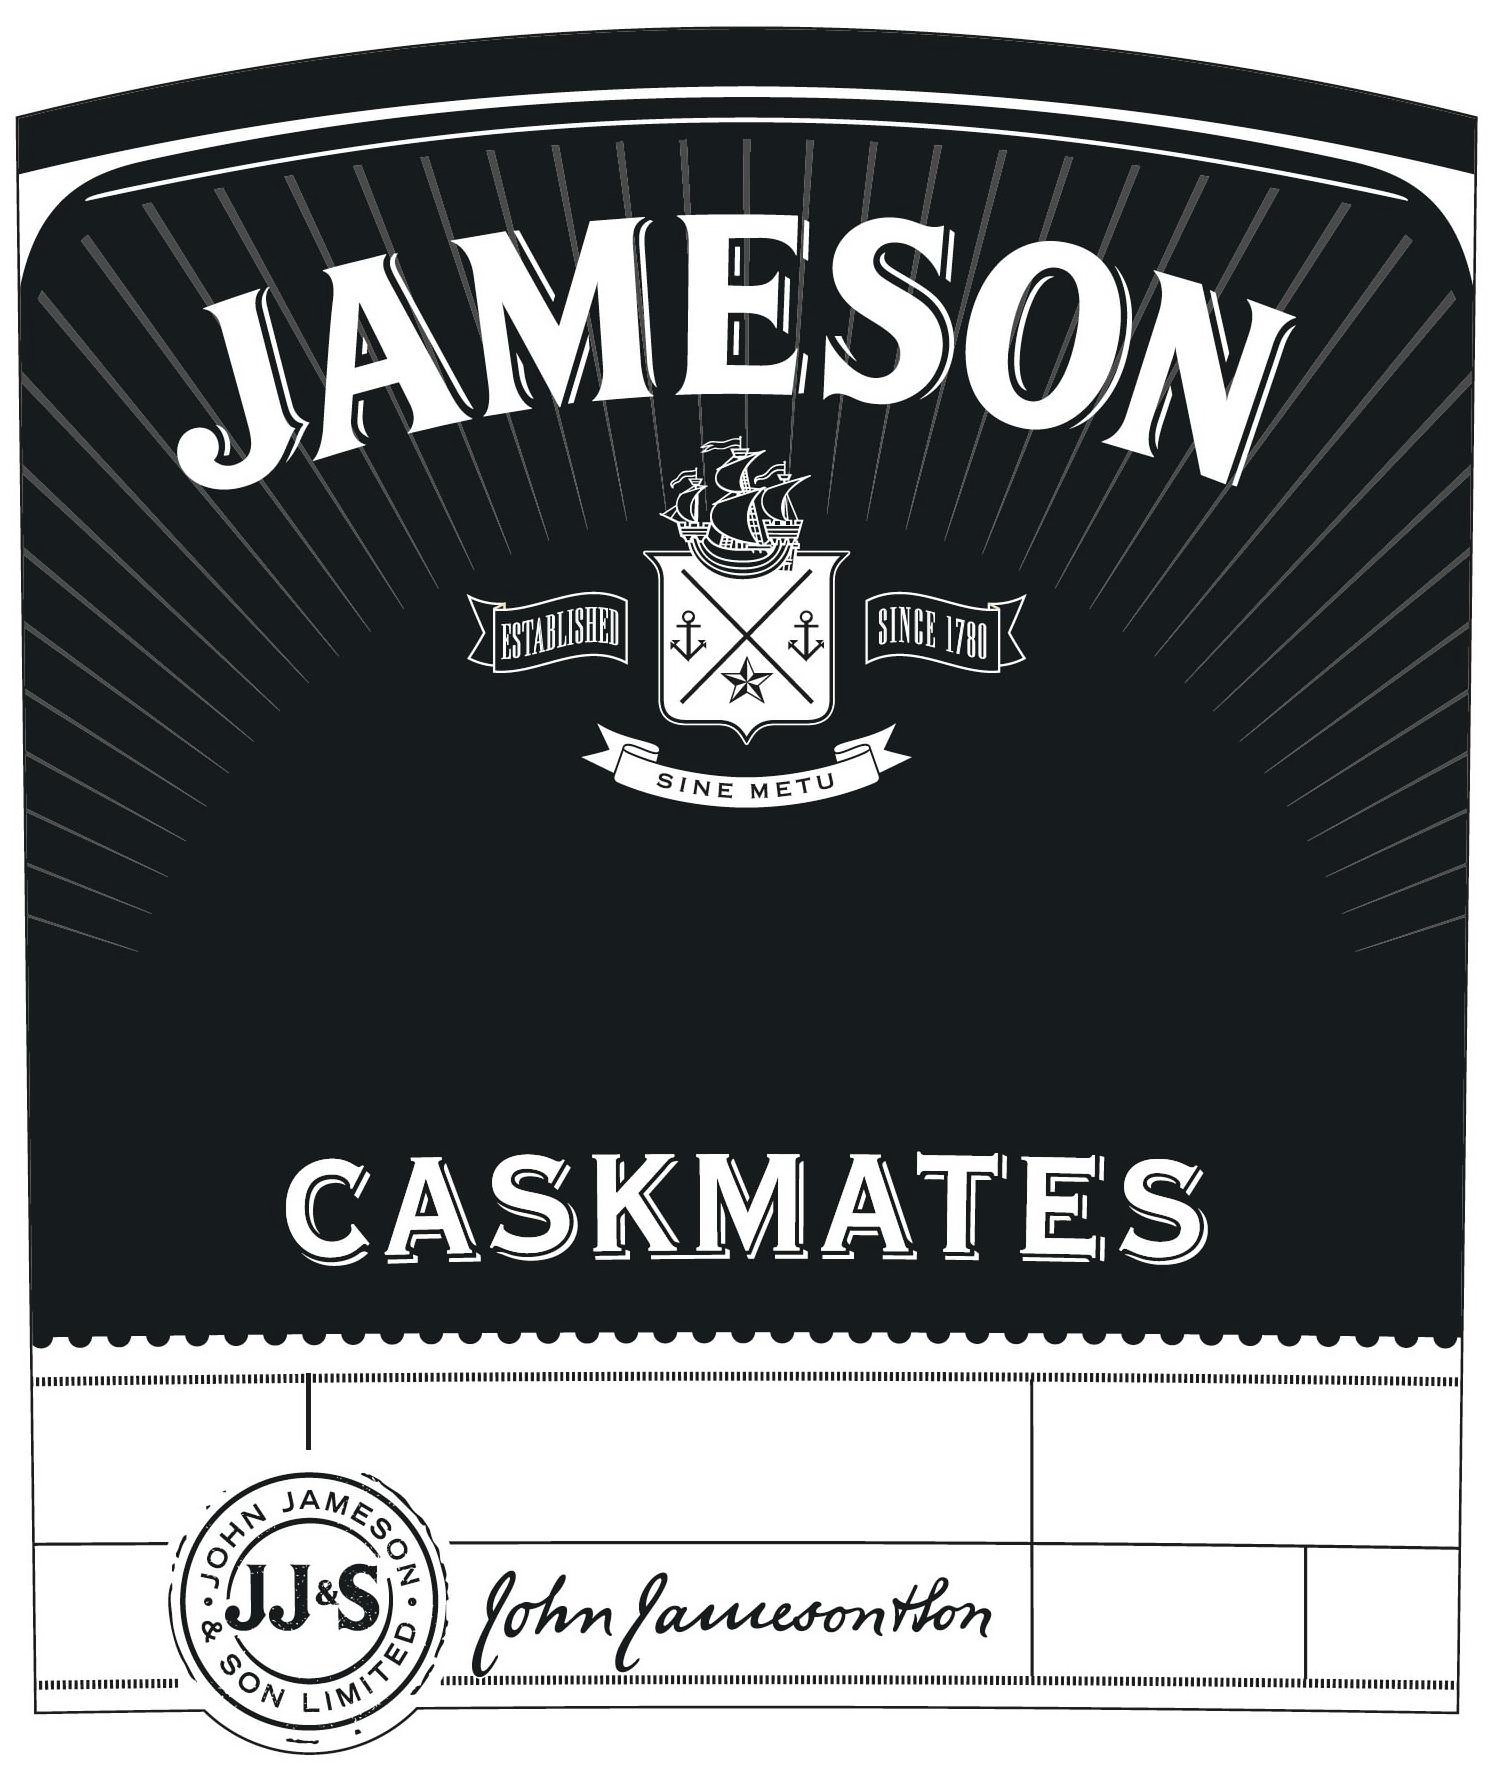  JAMESON ESTABLISHED SINCE 1780 SINE METU CASKMATES JJ&amp;S JOHN JAMESON &amp; SON LIMITED JOHN JAMESON &amp; SON